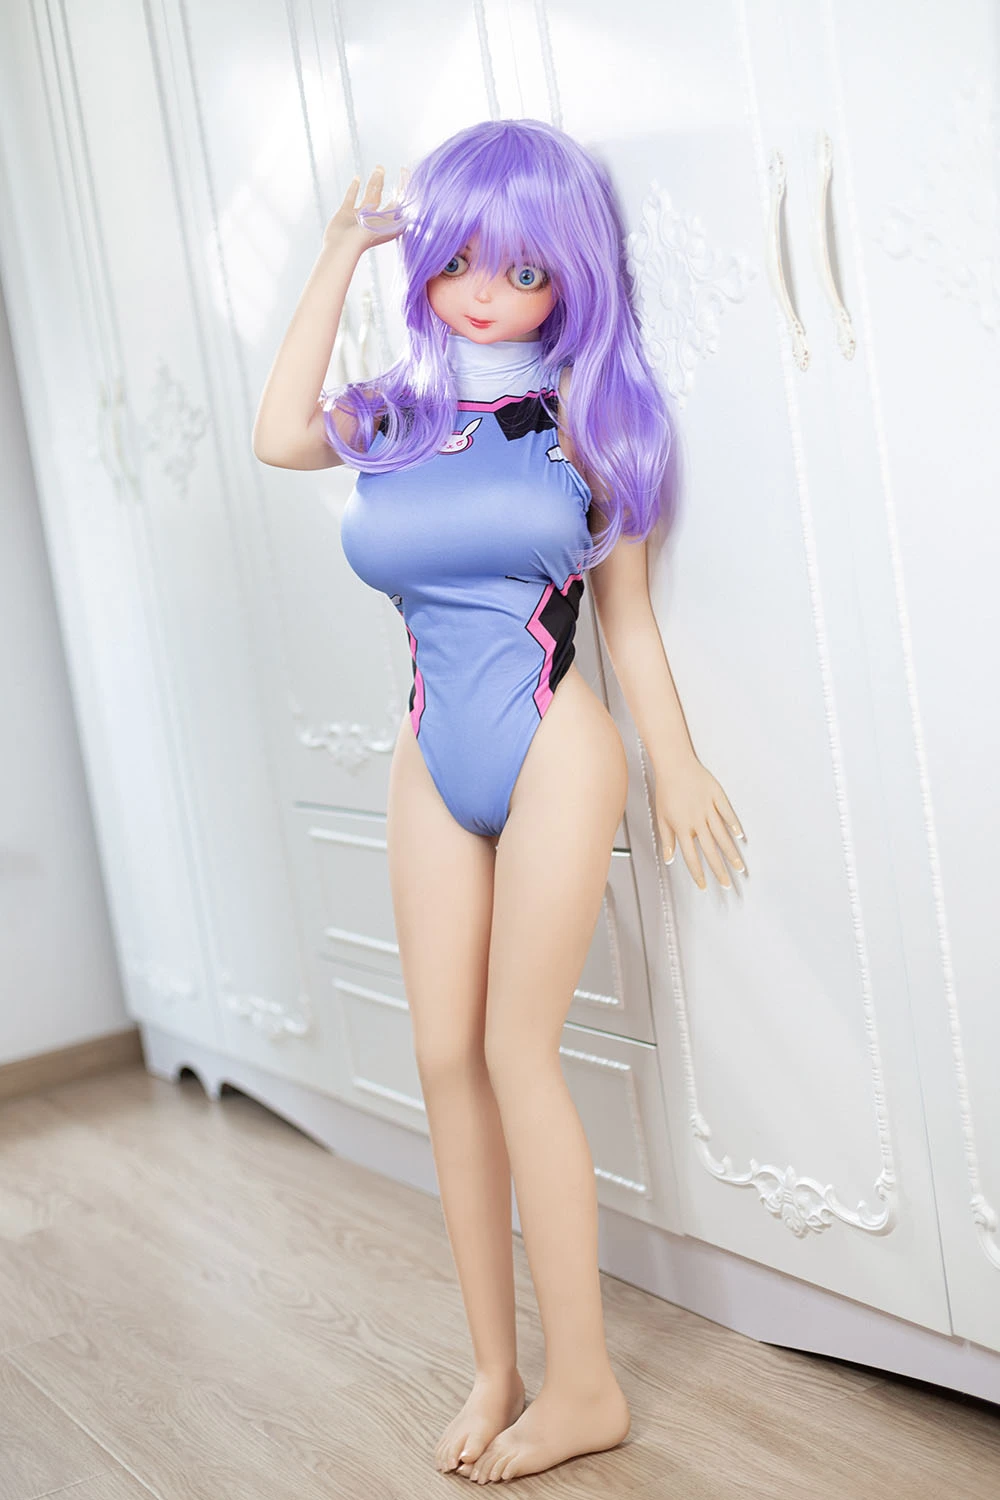 Purple Hair sex doll